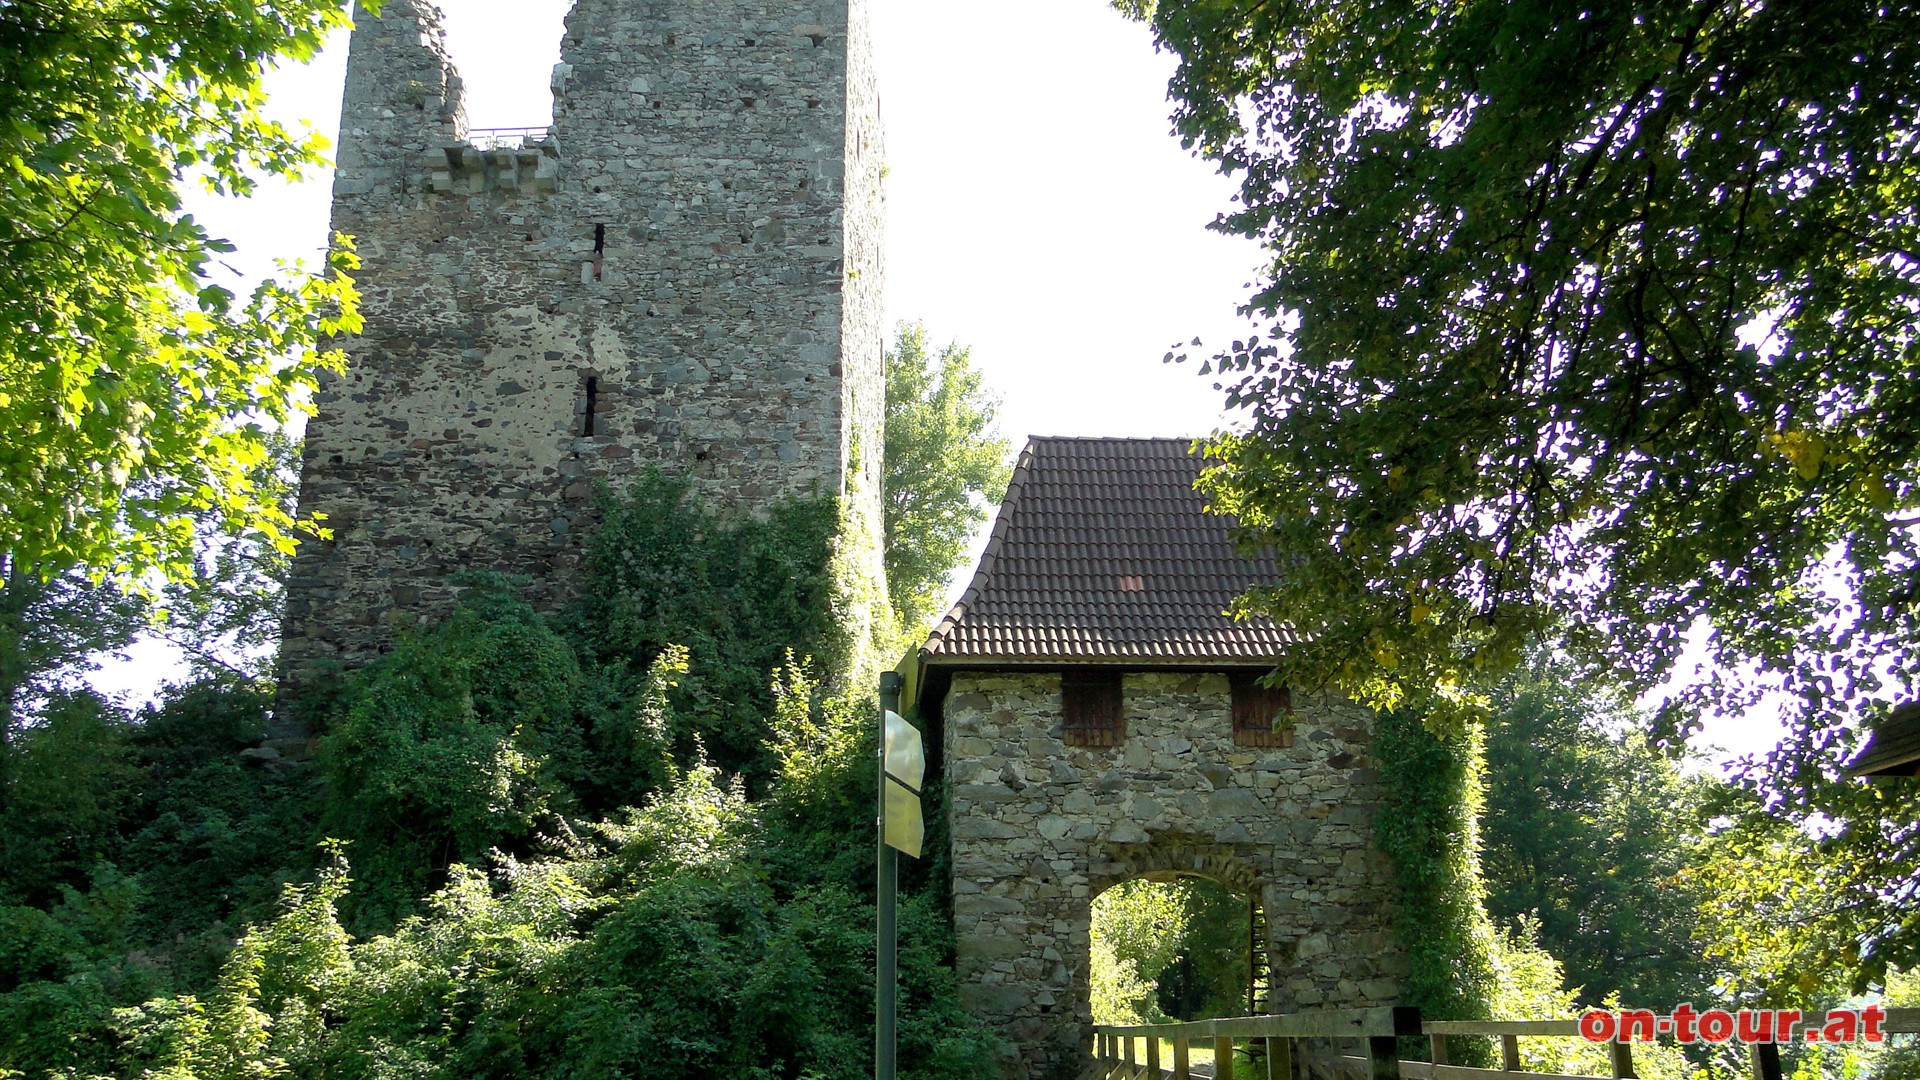 Weiter zur Ruine Haichenbach. Die ehemalige Raubritterburg wurde 1160 erstmals urkundlich erwhnt.